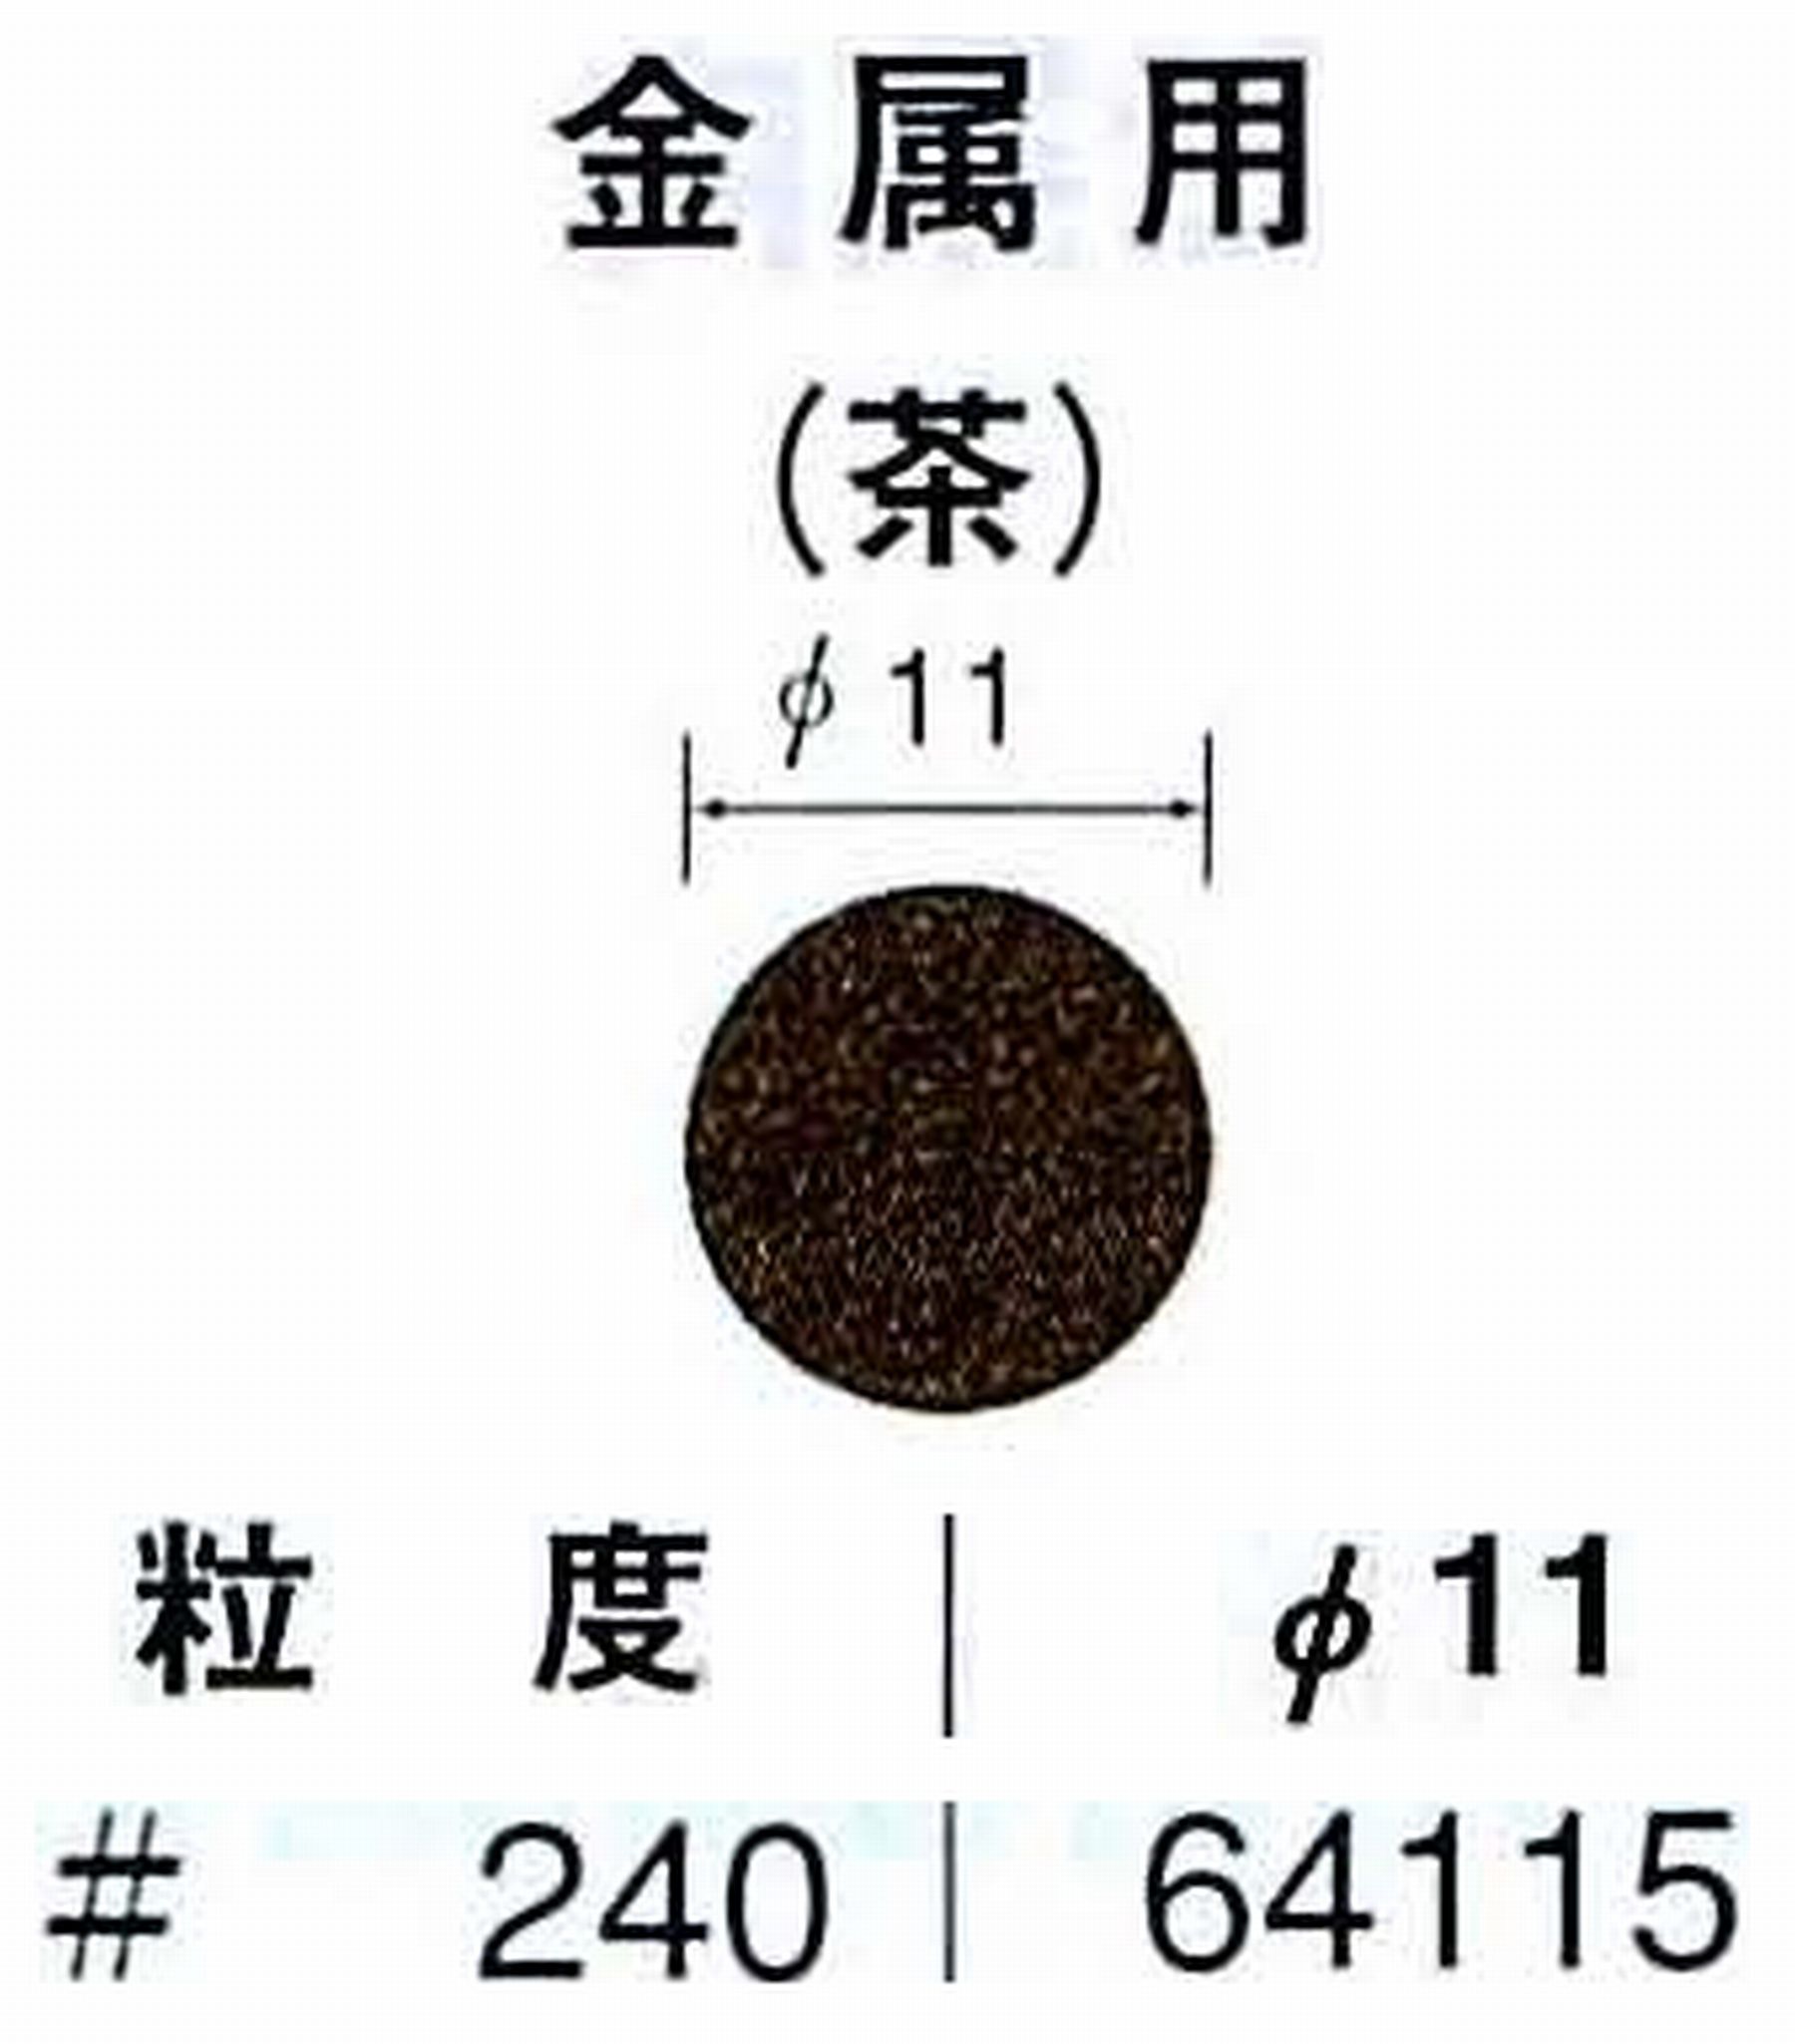 ナカニシ/NAKANISHI アングルグラインダ(電動・エアー) アングルアタッチメント専用工具 サンドペーパーディスク(布基材タイプ)裏面のり処理 64115